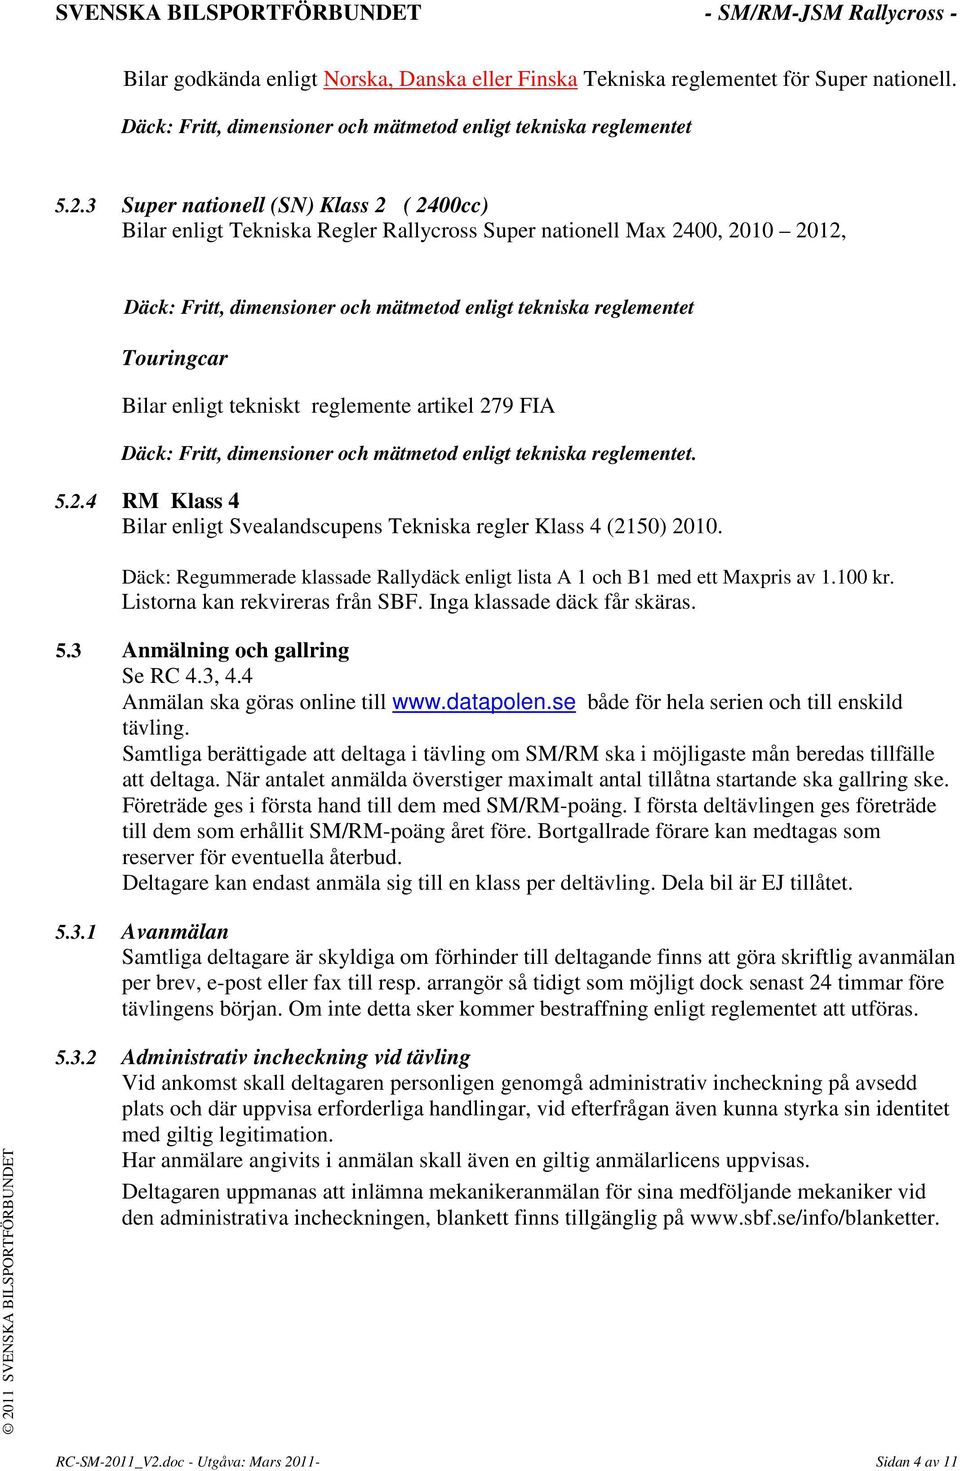 Bilar enligt tekniskt reglemente artikel 279 FIA Däck: Fritt, dimensioner och mätmetod enligt tekniska reglementet. 5.2.4 RM Klass 4 Bilar enligt Svealandscupens Tekniska regler Klass 4 (2150) 2010.